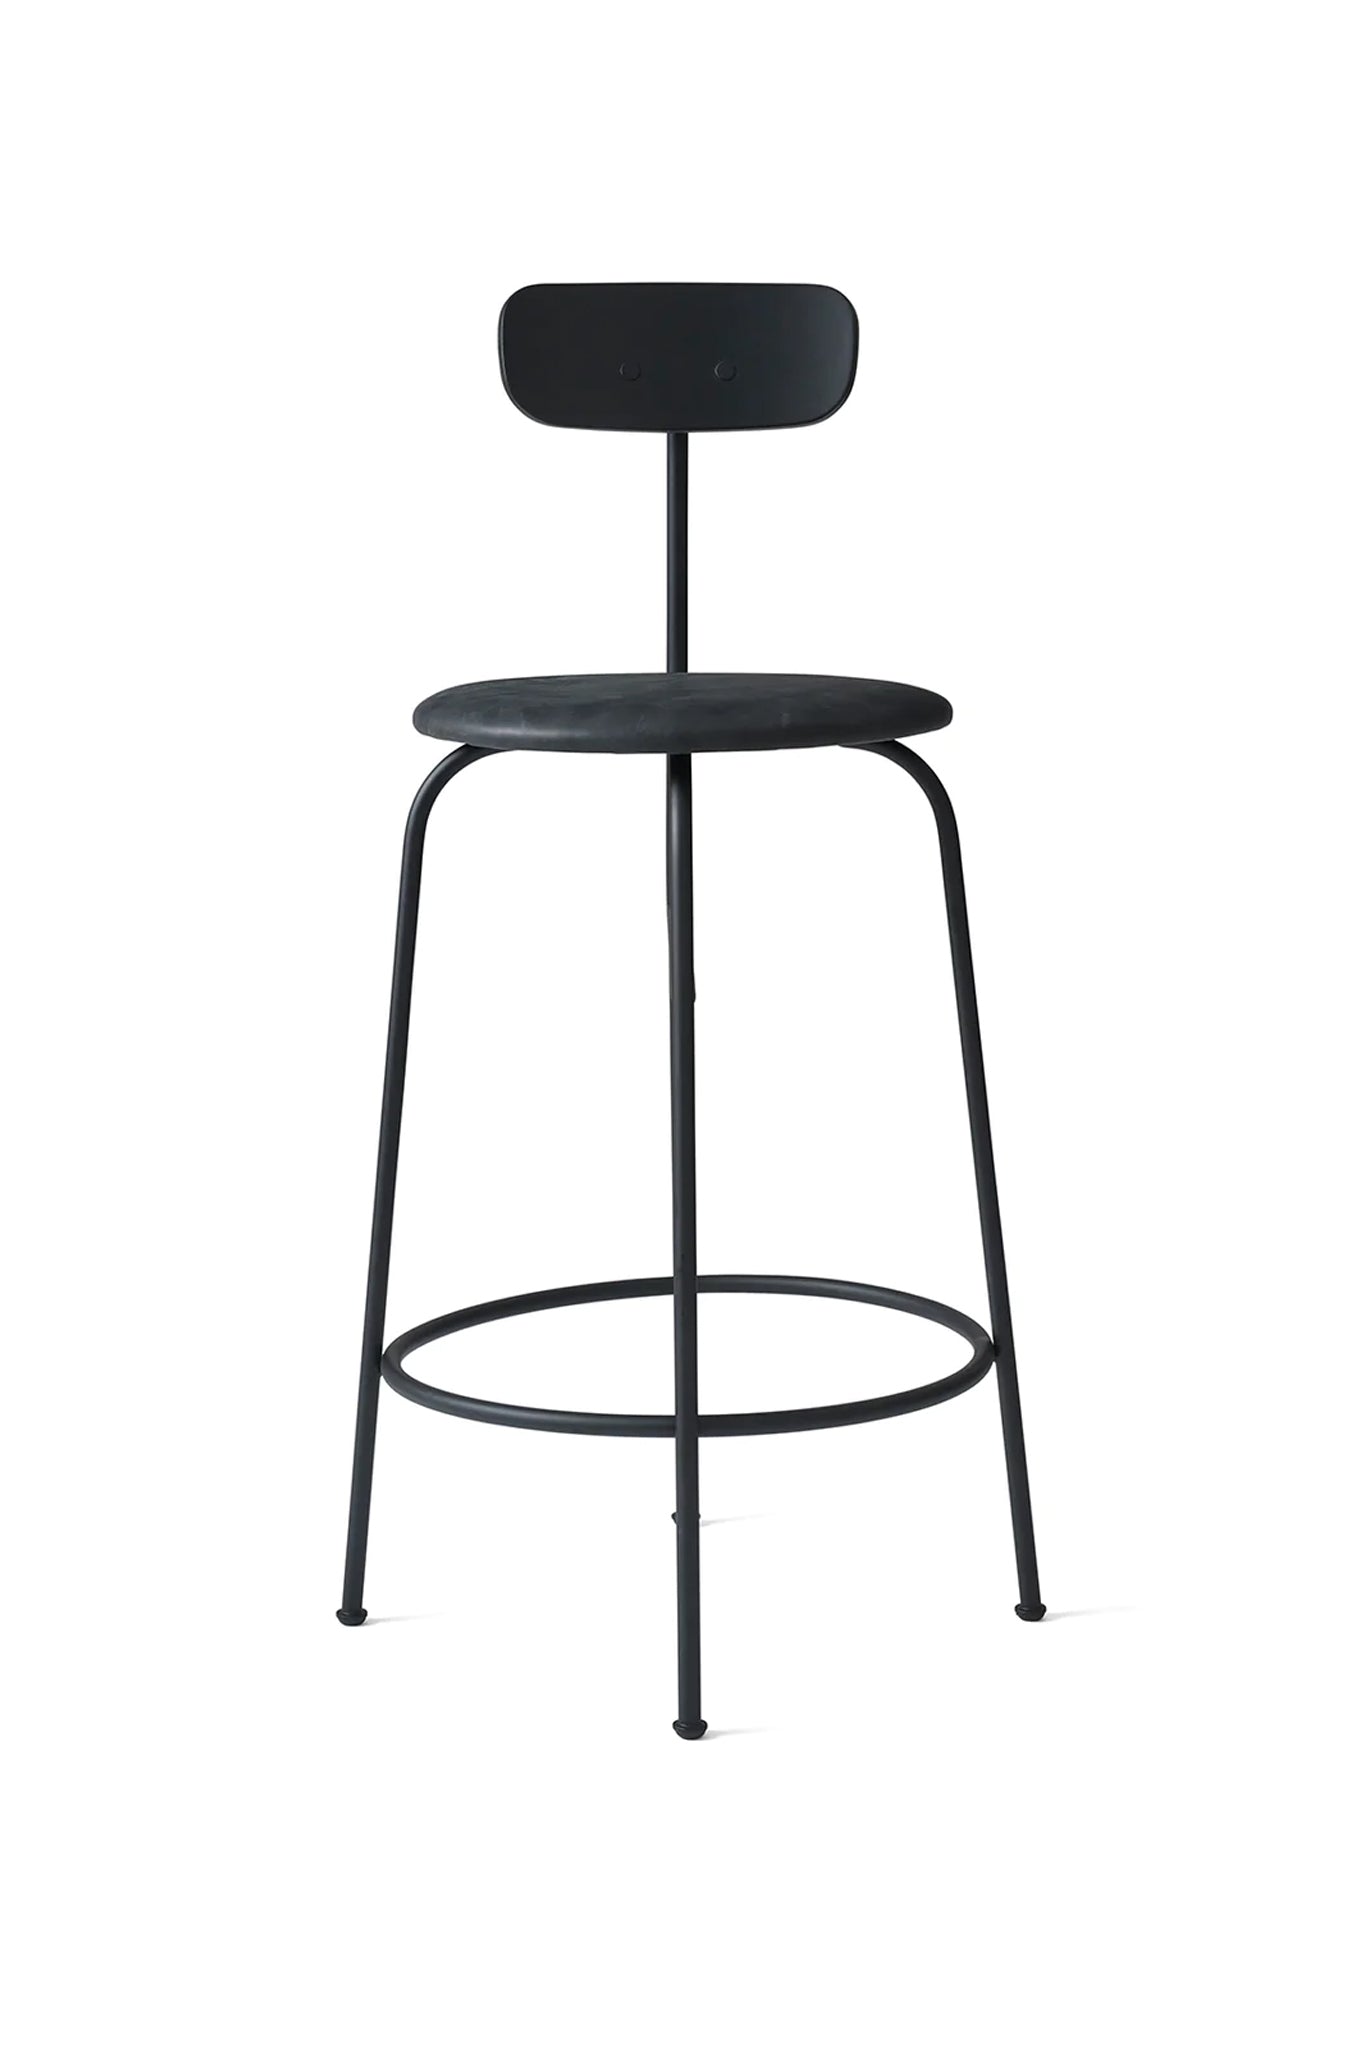 Menu Afteroom Counter Chair - Black Steel